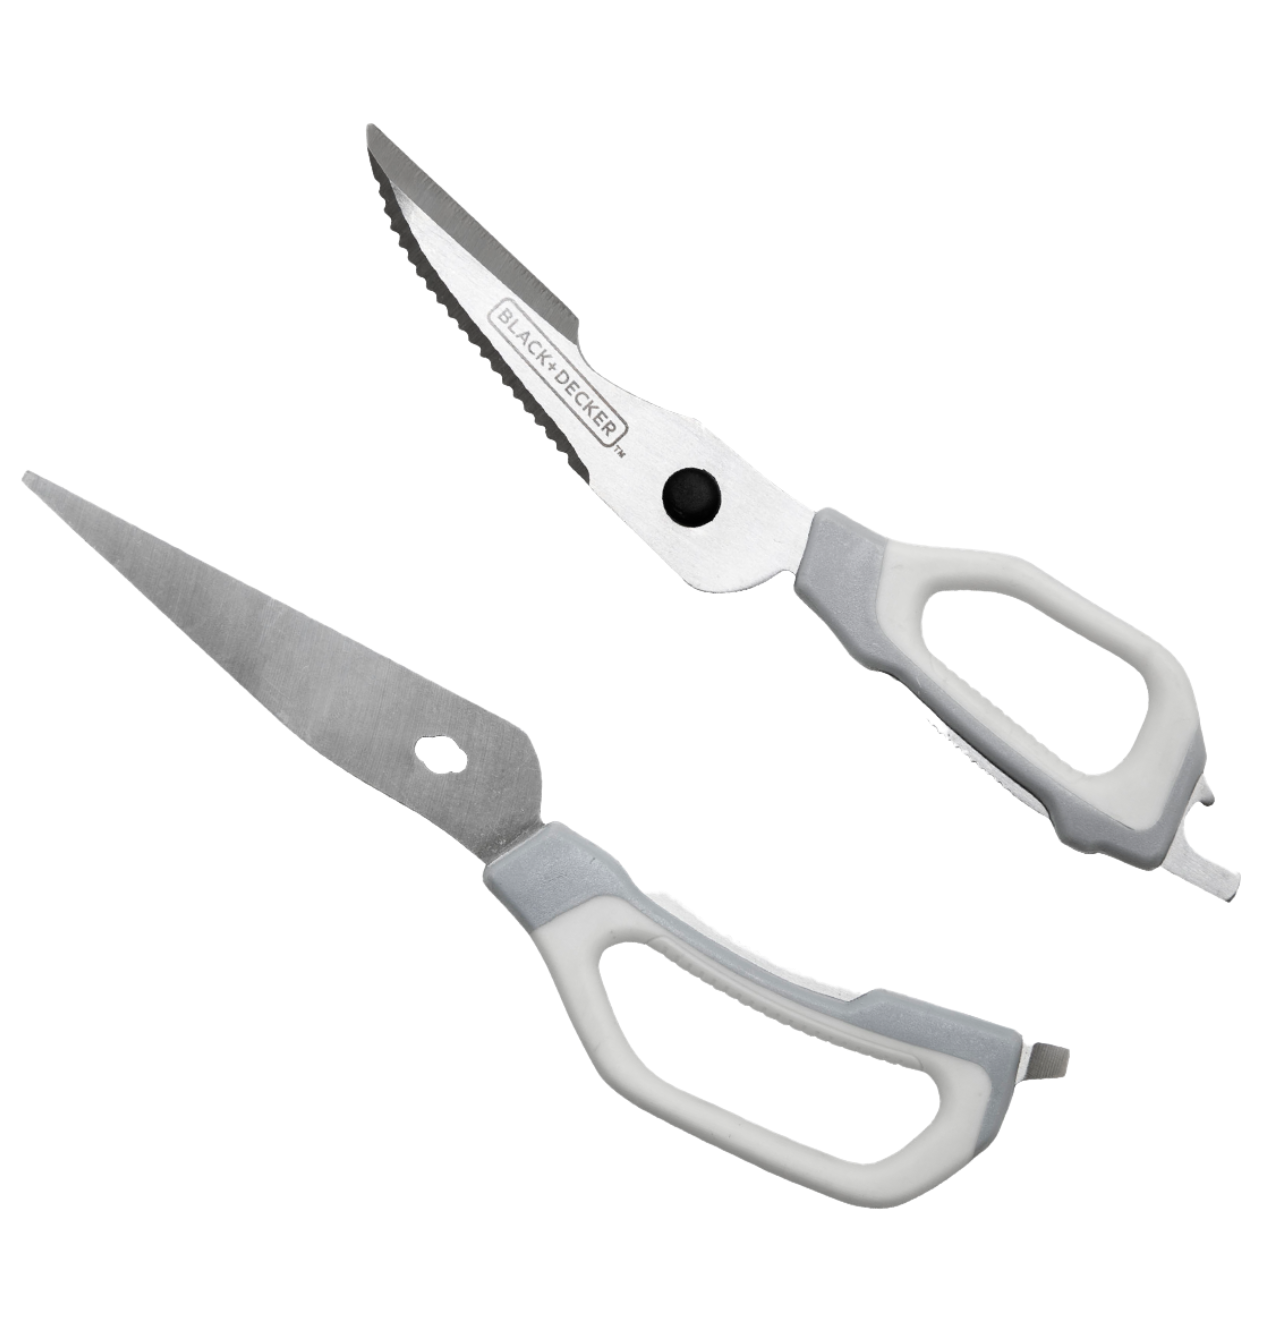 Black+decker Scissors, Multi-Pack, White (BDHT20001)